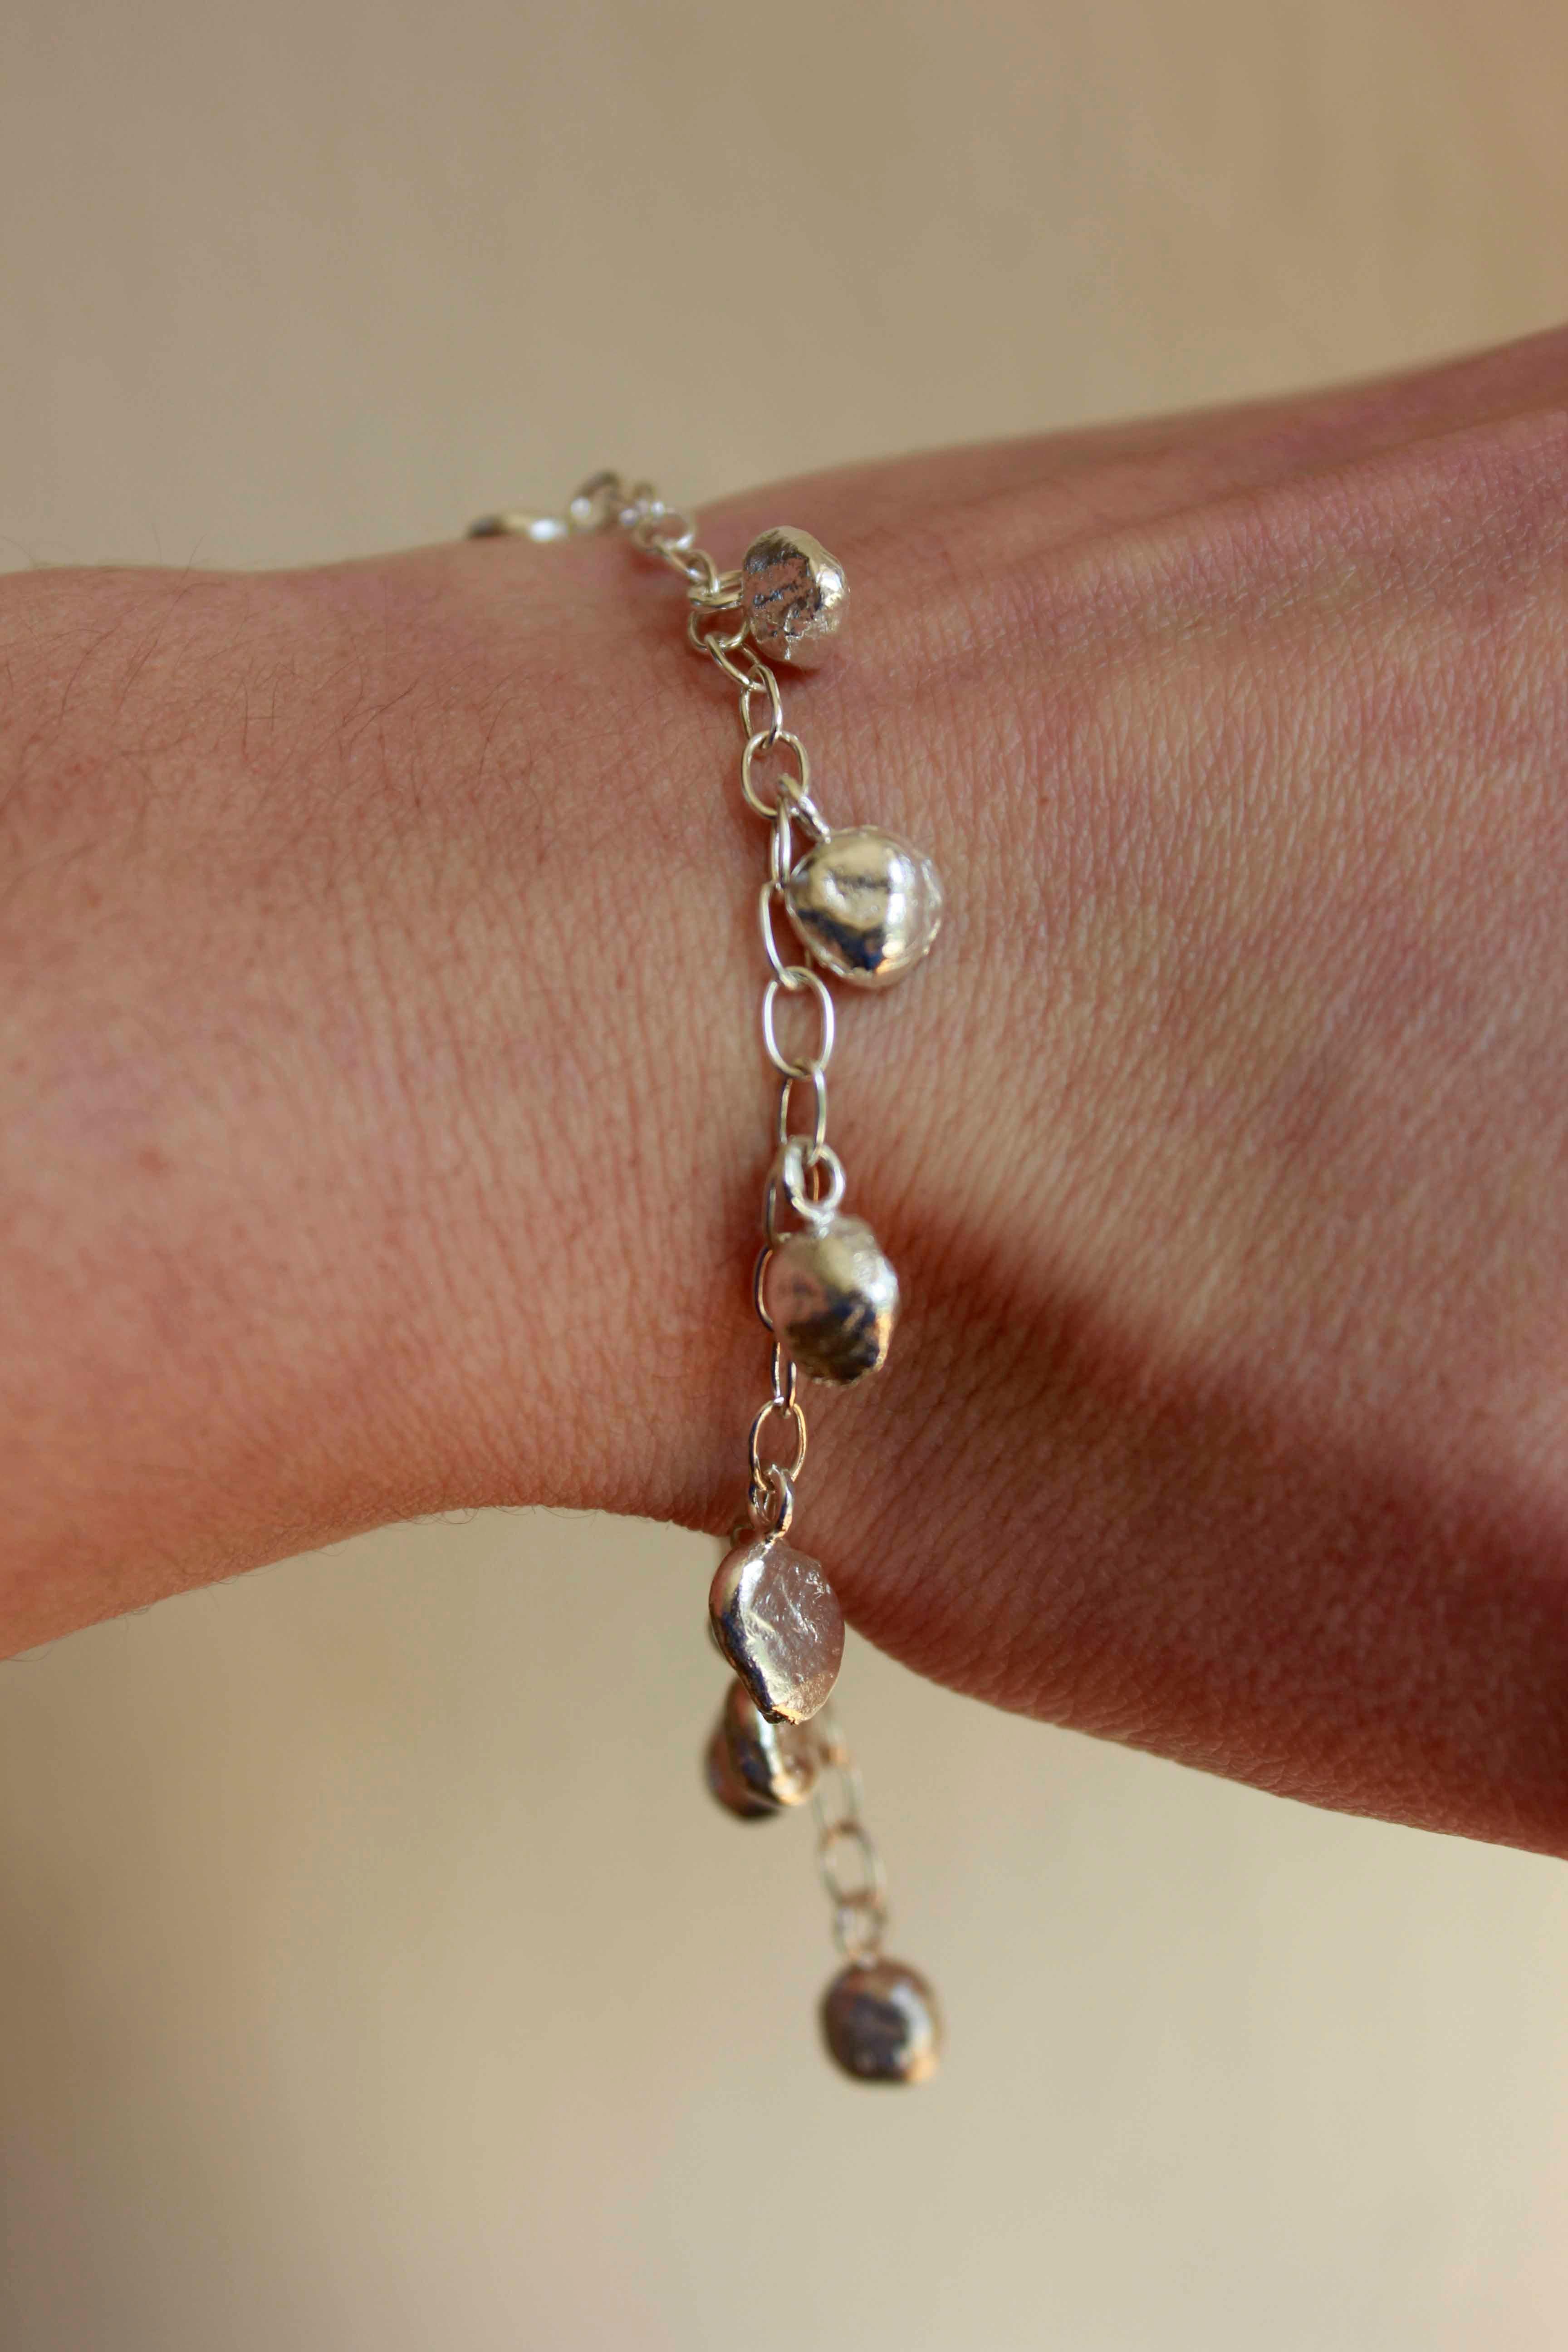 Le bracelet Hera se compose de 11 boules en argent suspendues à une chaîne en argent.

Le bracelet est réglable et sa longueur maximale est de 21 cm.

Les petites boules organiques sont fabriquées à partir de nos déchets d'argent, ce qui signifie